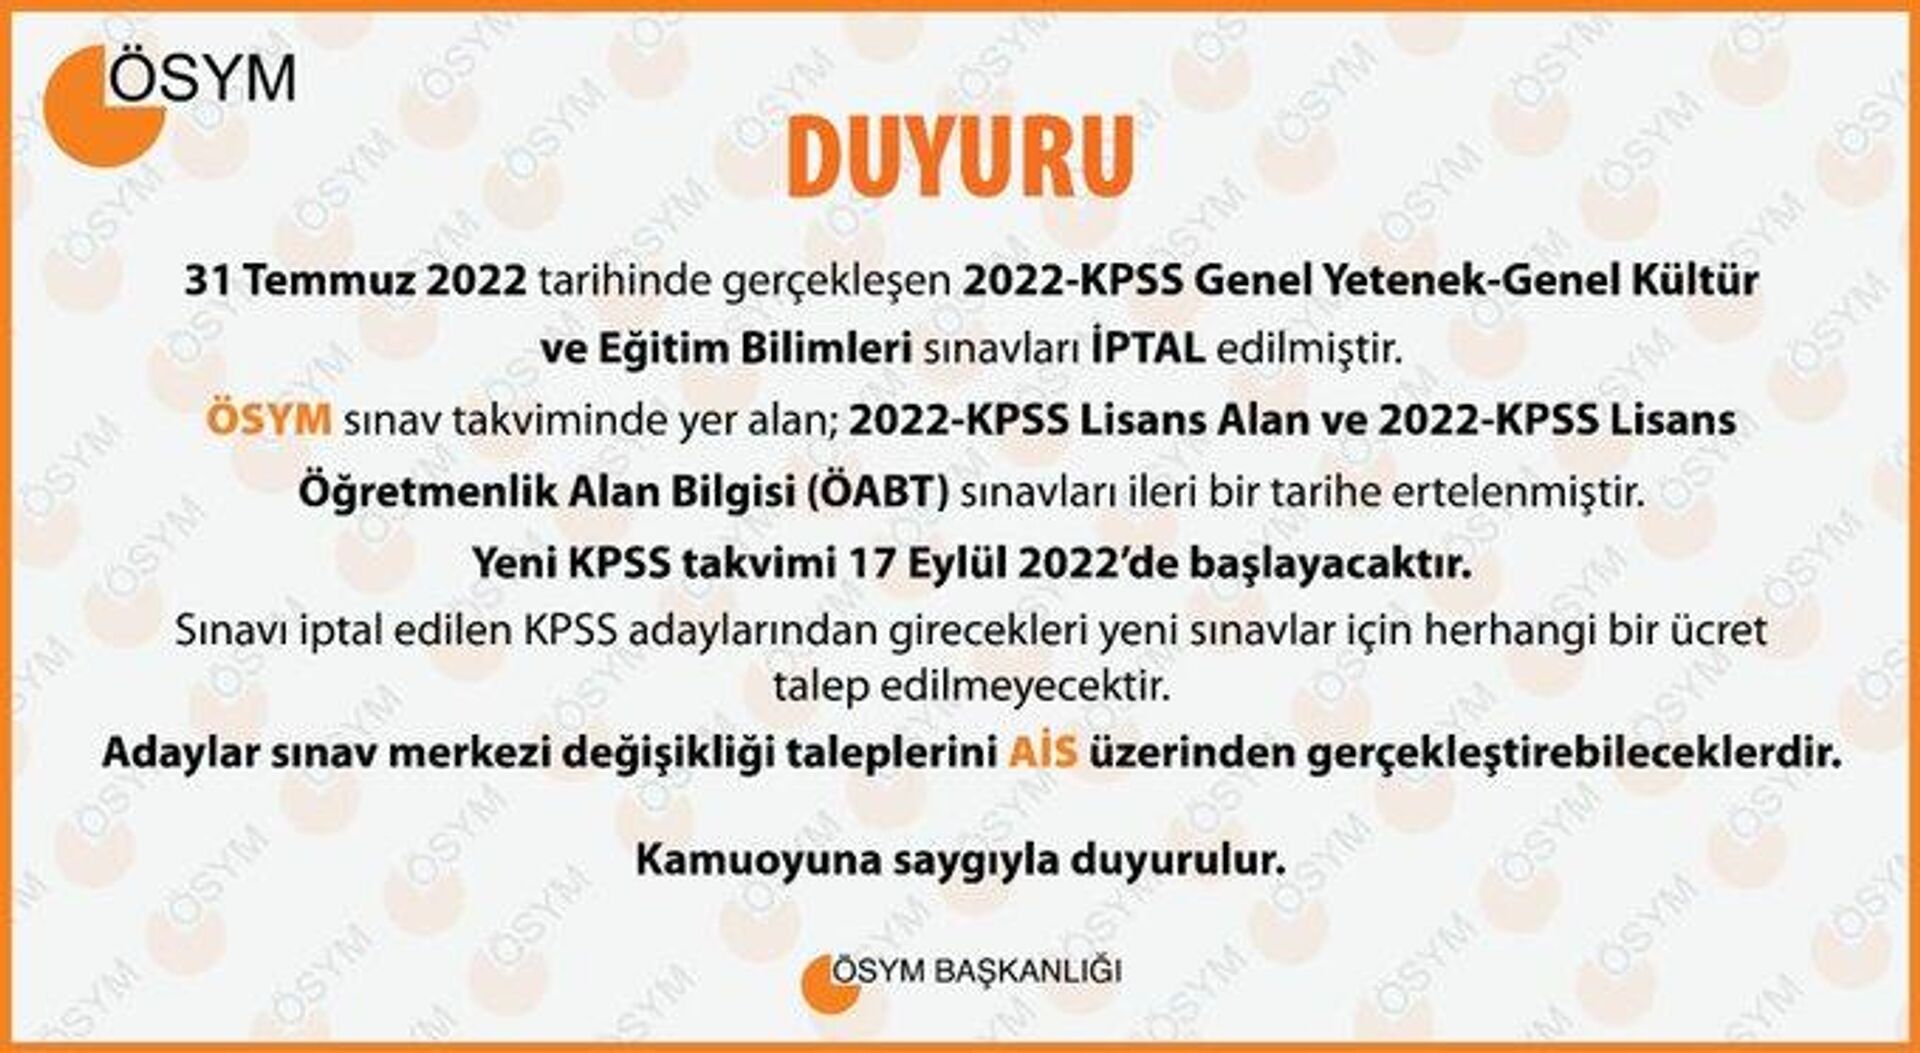 ÖSYM, yeni KPSS takvimini sosyal medyadan duyurdu. Açıklamaya göre yeni KPSS takvimi 17 Eylül'de başlayacak. - Sputnik Türkiye, 1920, 05.08.2022